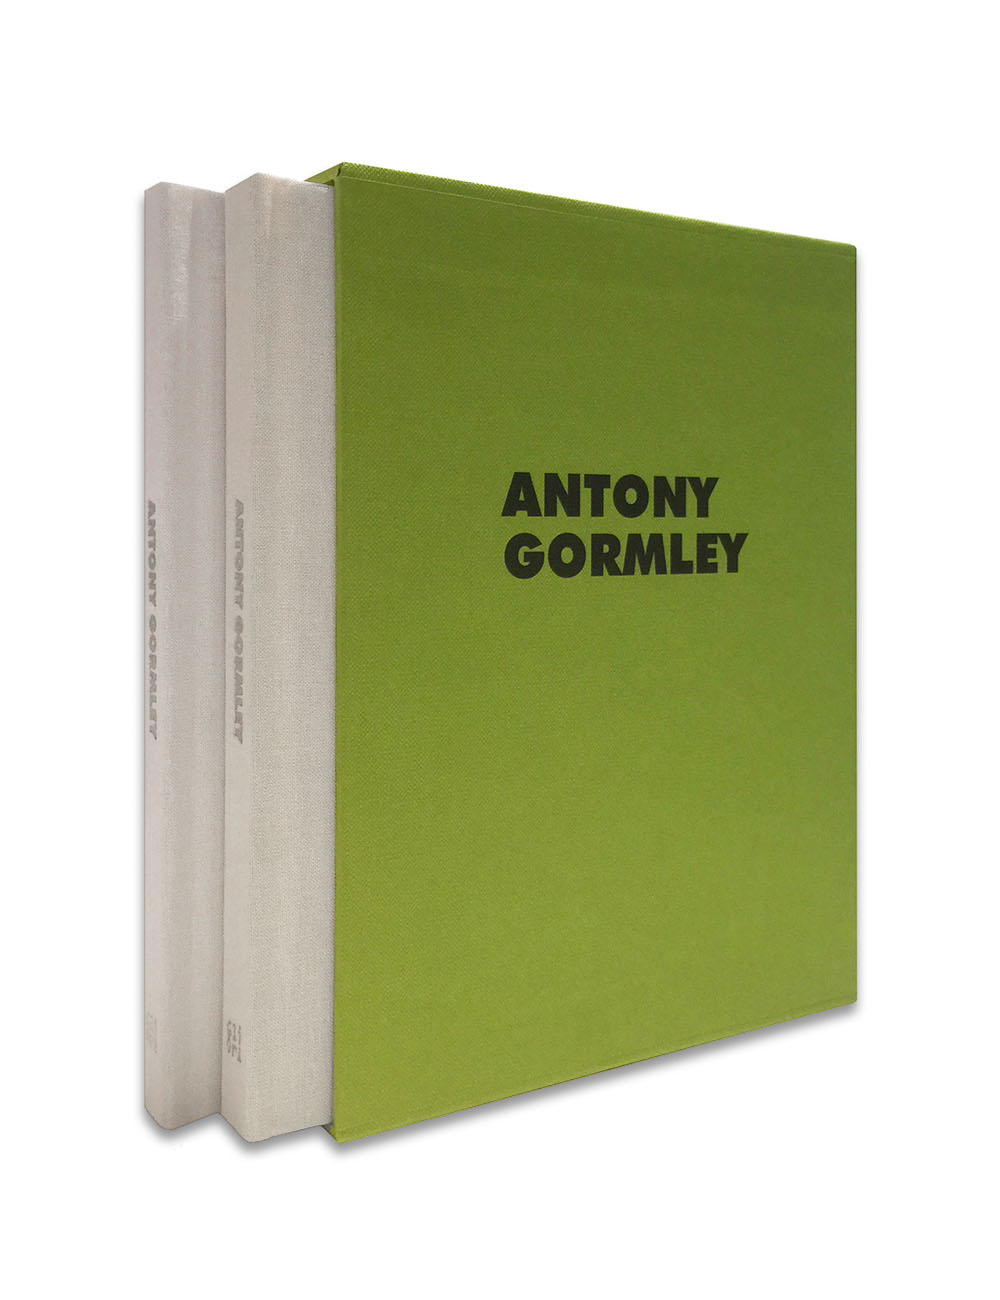 ANTONY GORMLEY. LOST SUBJECT, FREE OBJECT, 2022